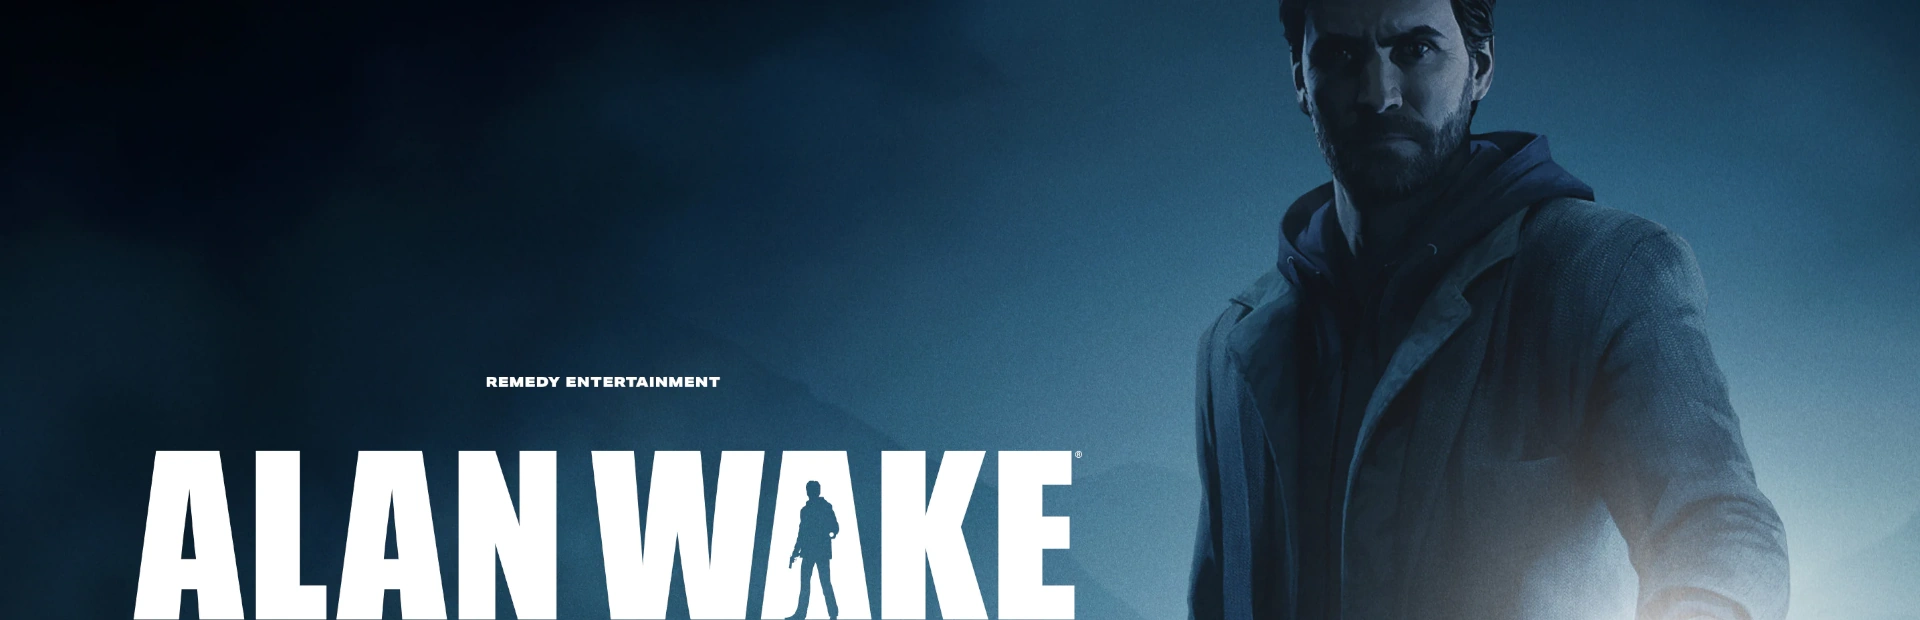 دانلود بازی Alan Wake Remastered برای کامپیوتر | گیمباتو